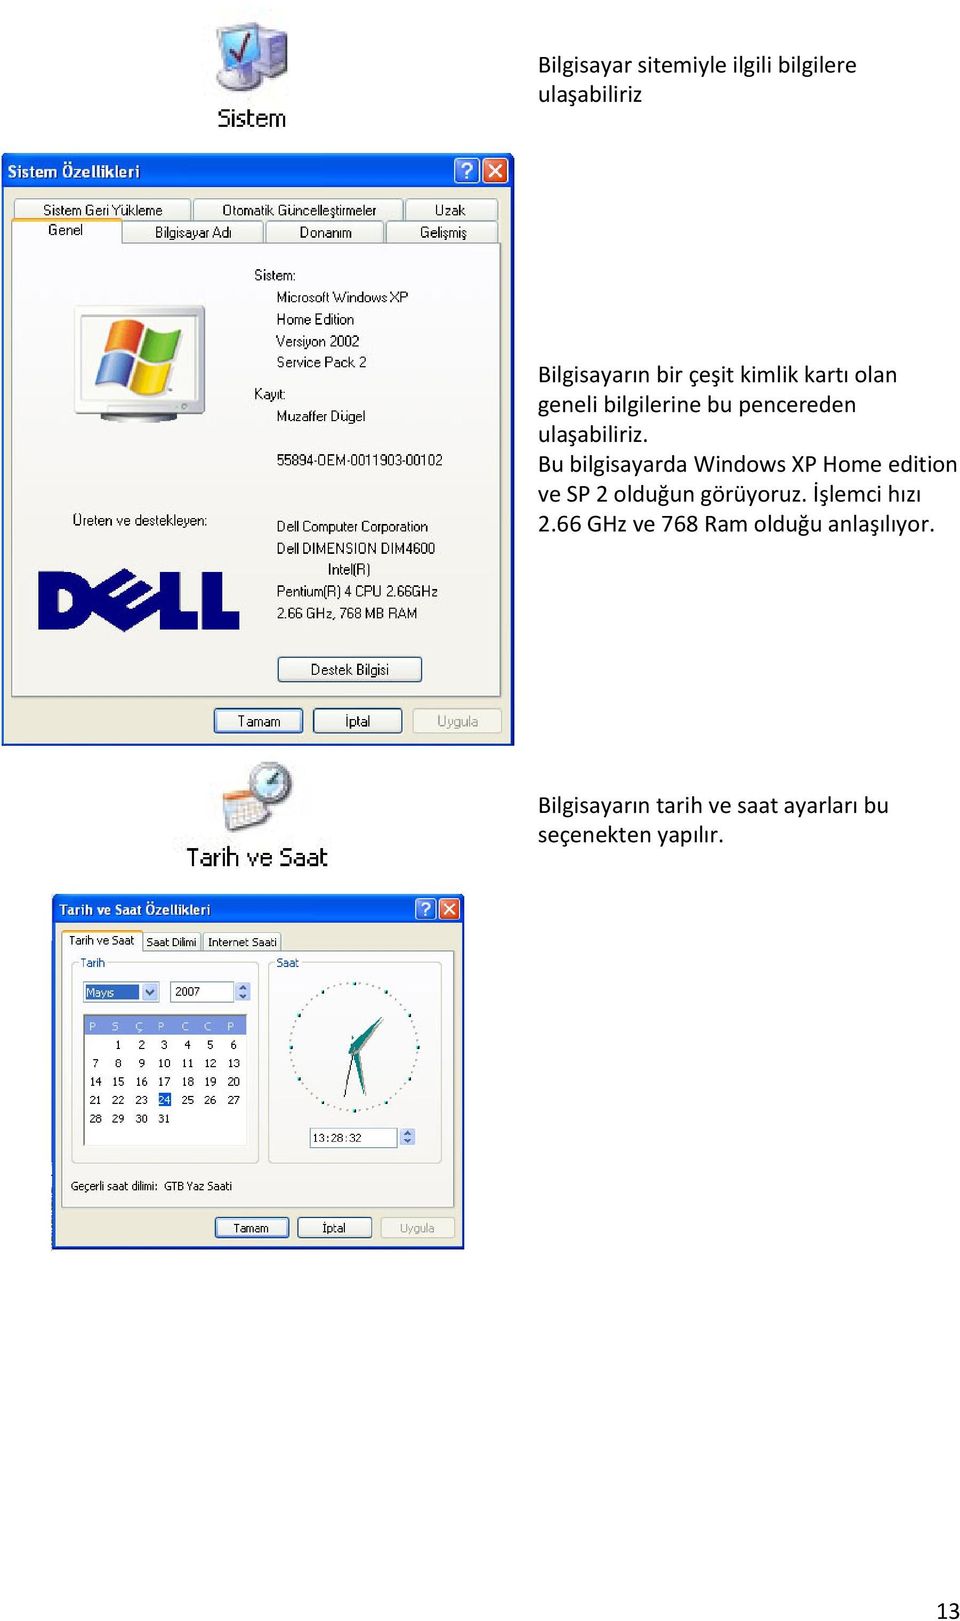 Bu bilgisayarda Windows XP Home edition ve SP 2 olduğun görüyoruz.